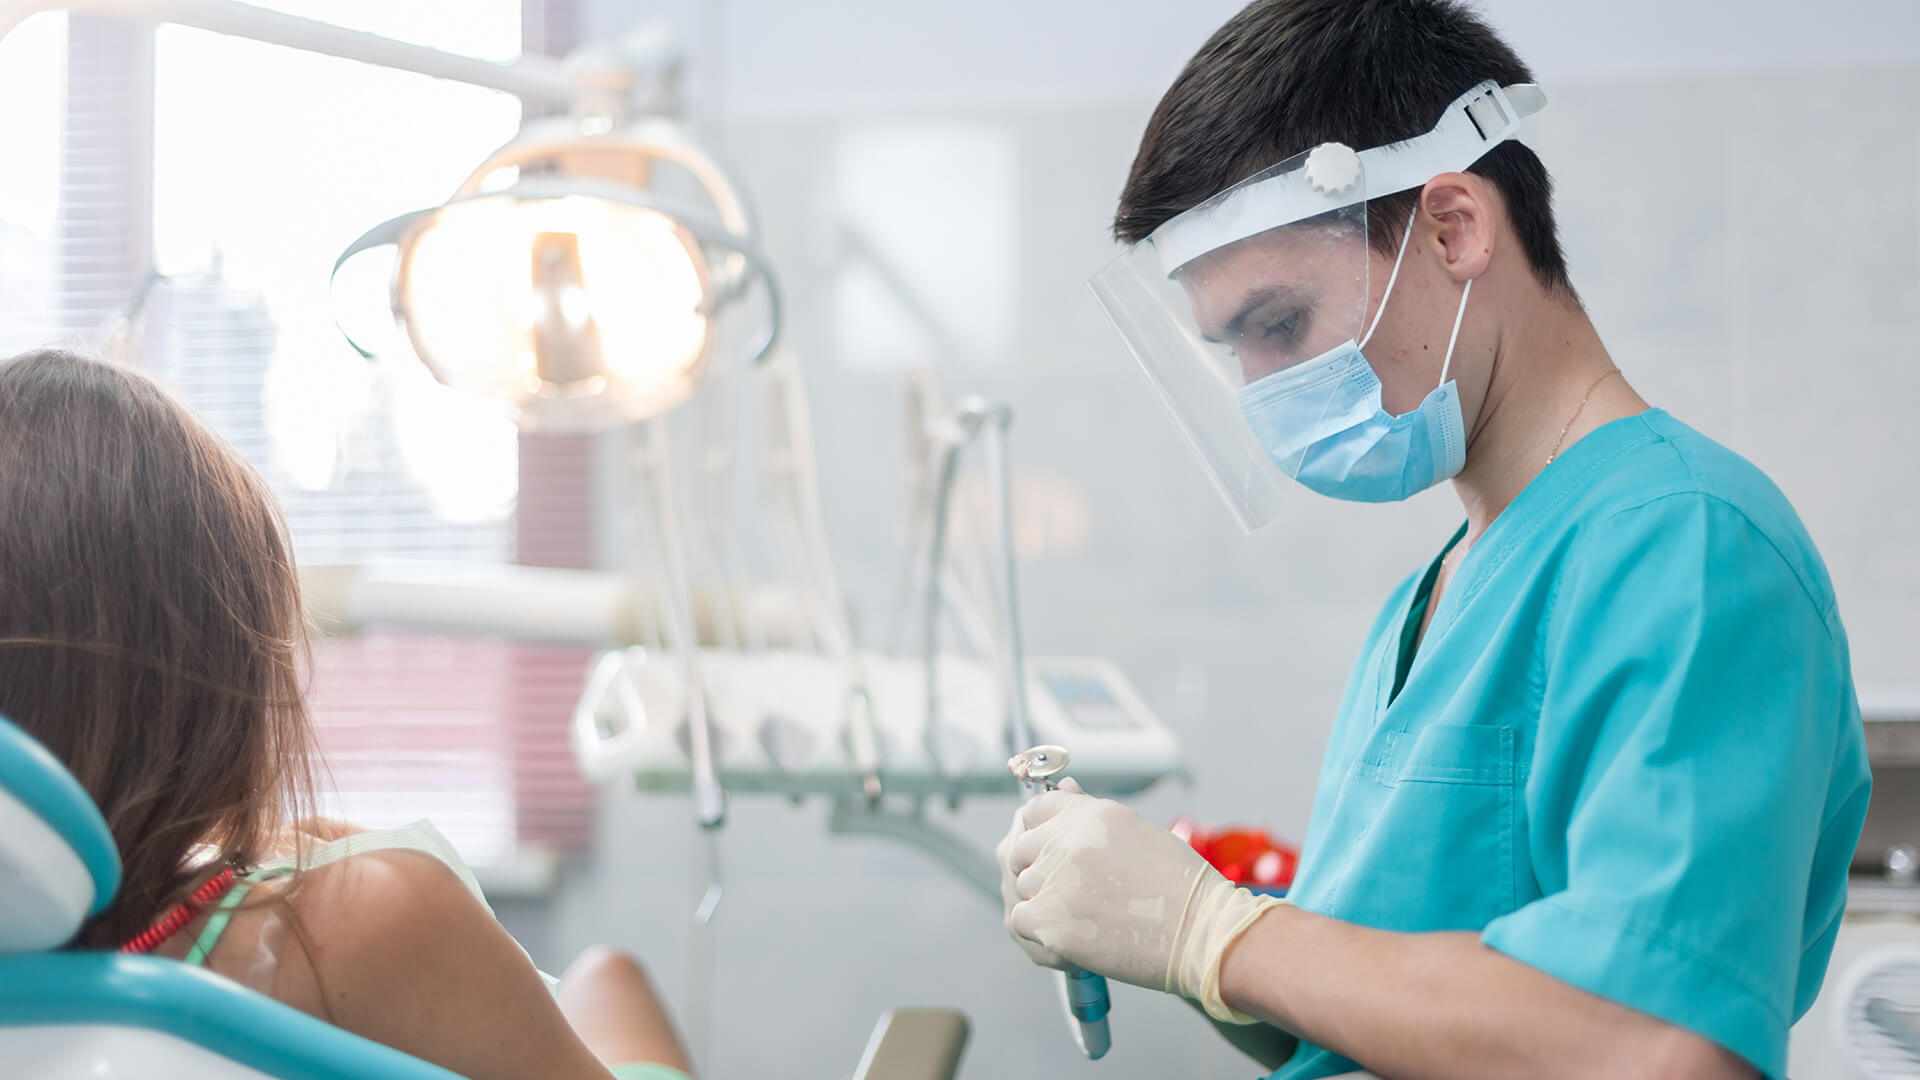 Стоматолог – врач-специалист, в компетенцию которого преимущественно входит диагностика, лечение и профилактика заболеваний и каких-либо повреждений зубов